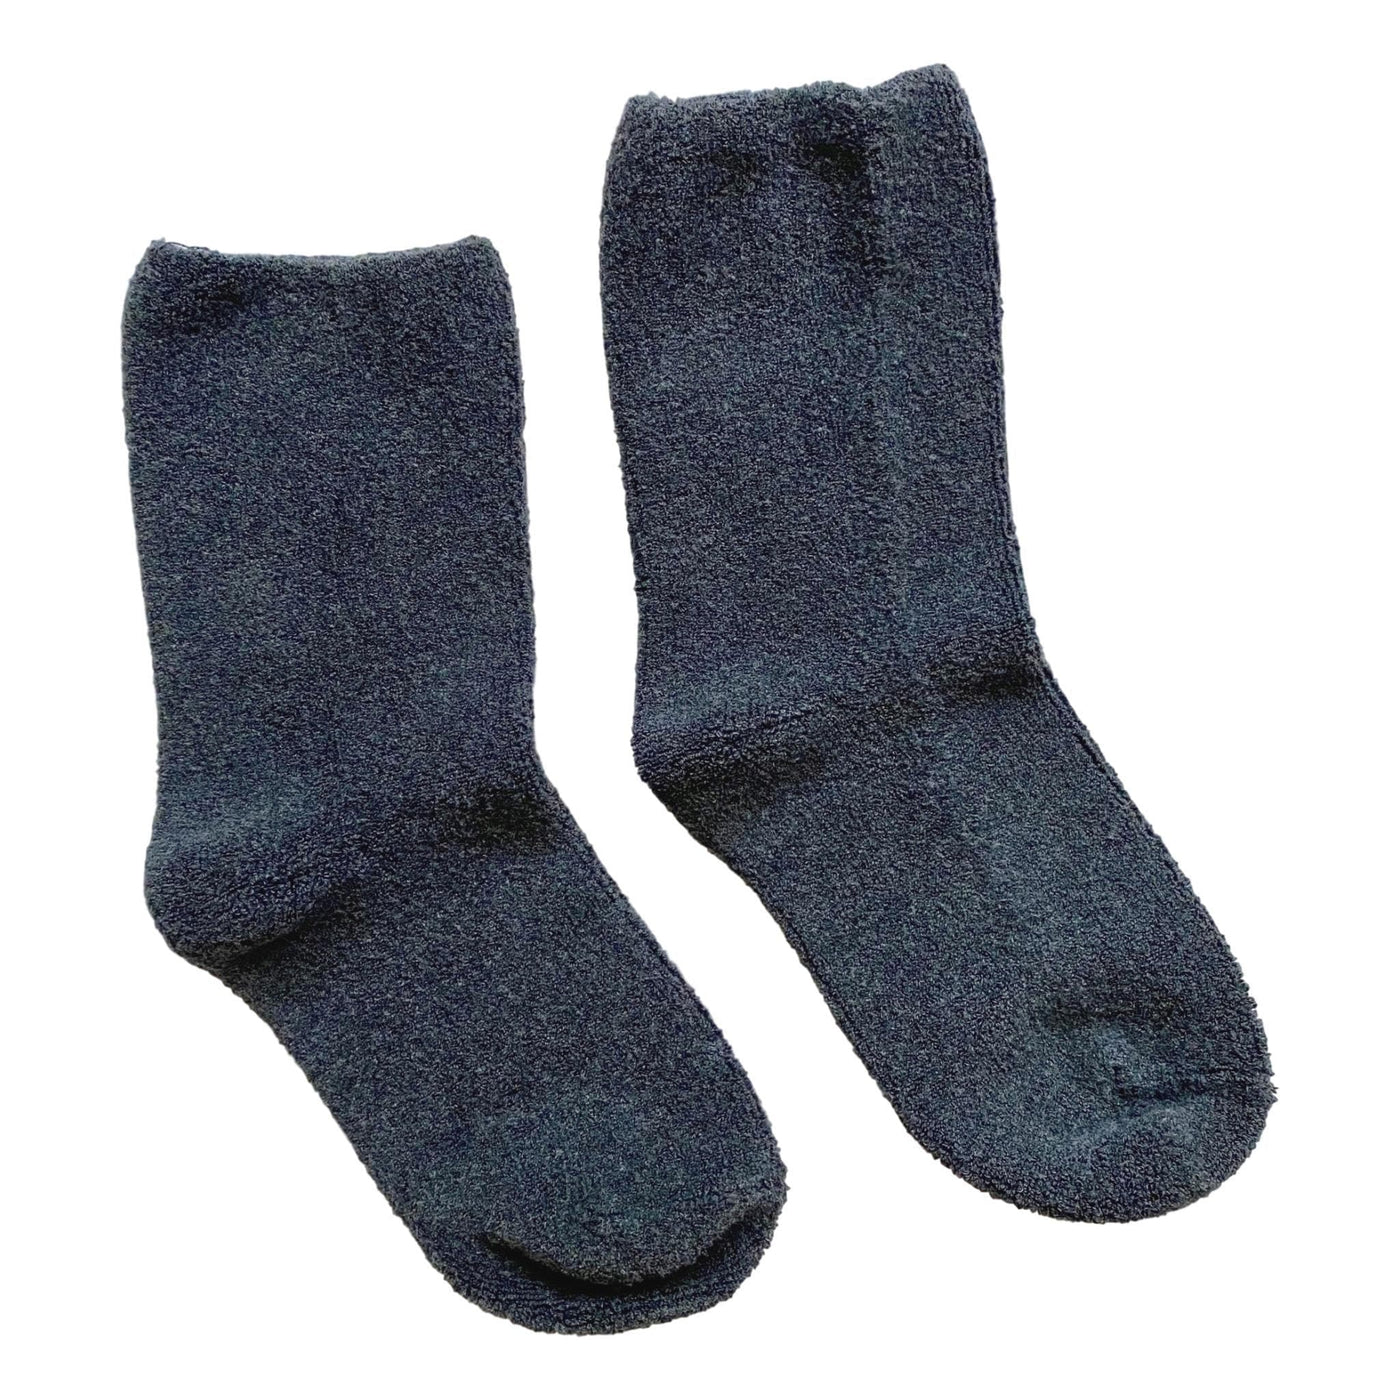 Cloud Socks - Charcoal - Giften Market 